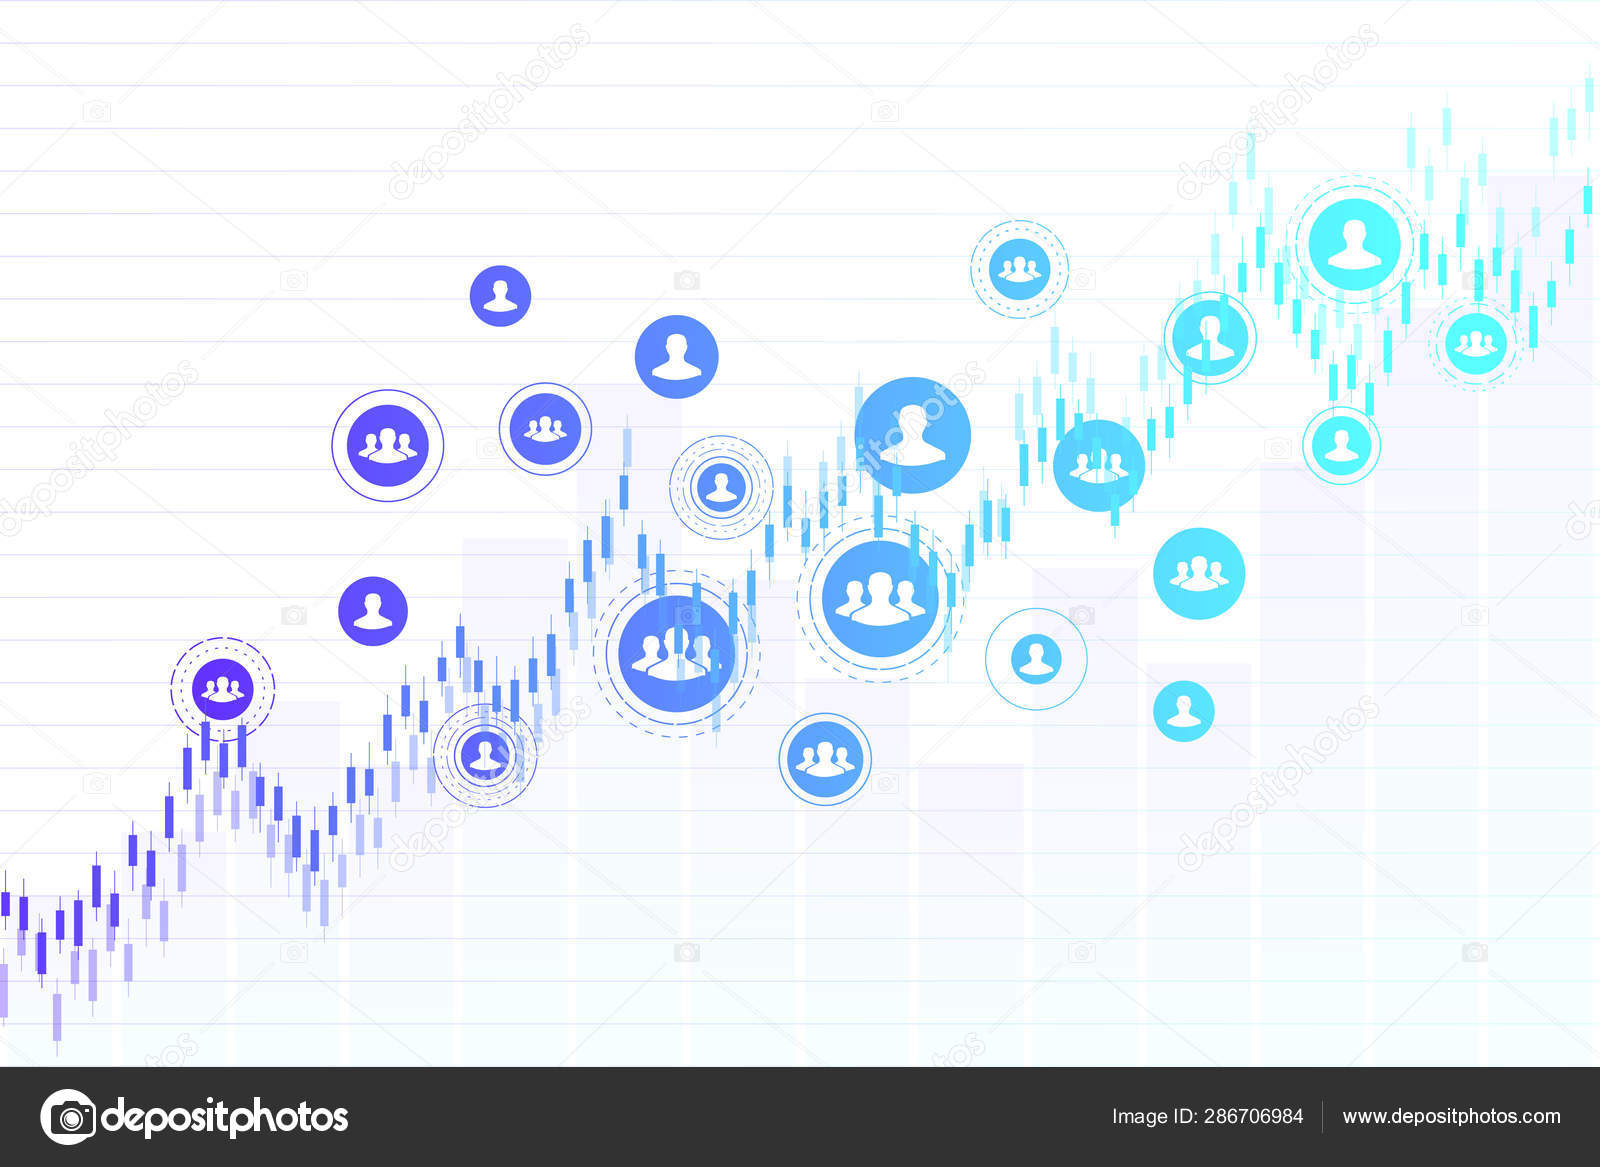 Stock Market Data Charts